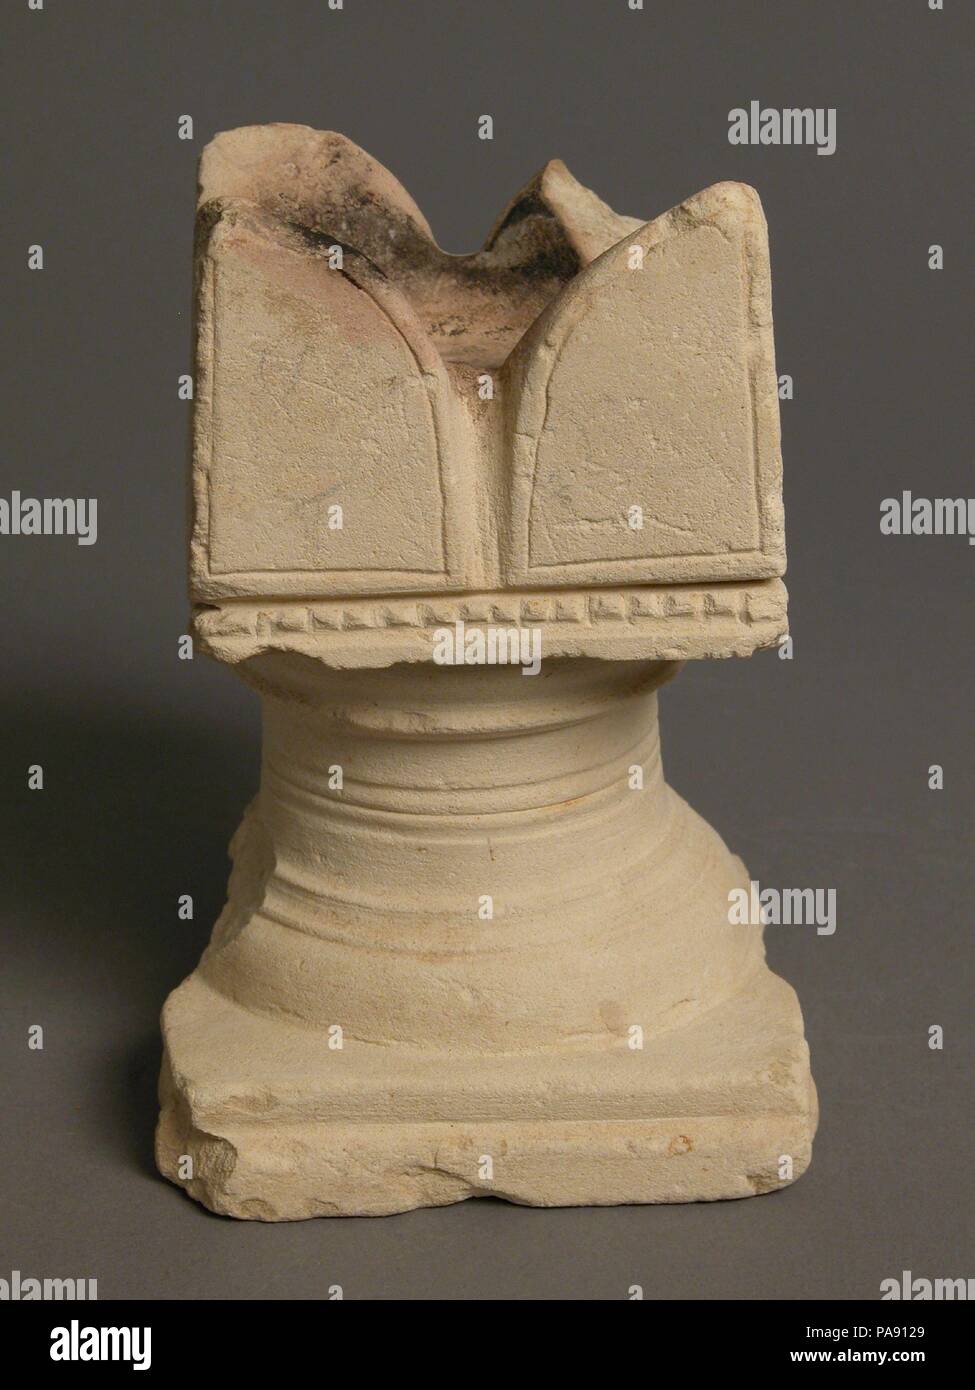 Brûleur d'encens. Culture : le copte. Dimensions : hors tout : 5 13/16 x 3 15/16 x 4 5/16 in. (14.8 x 10 x 10.9 cm). Date : 4ème-7ème siècle. Musée : Metropolitan Museum of Art, New York, USA. Banque D'Images